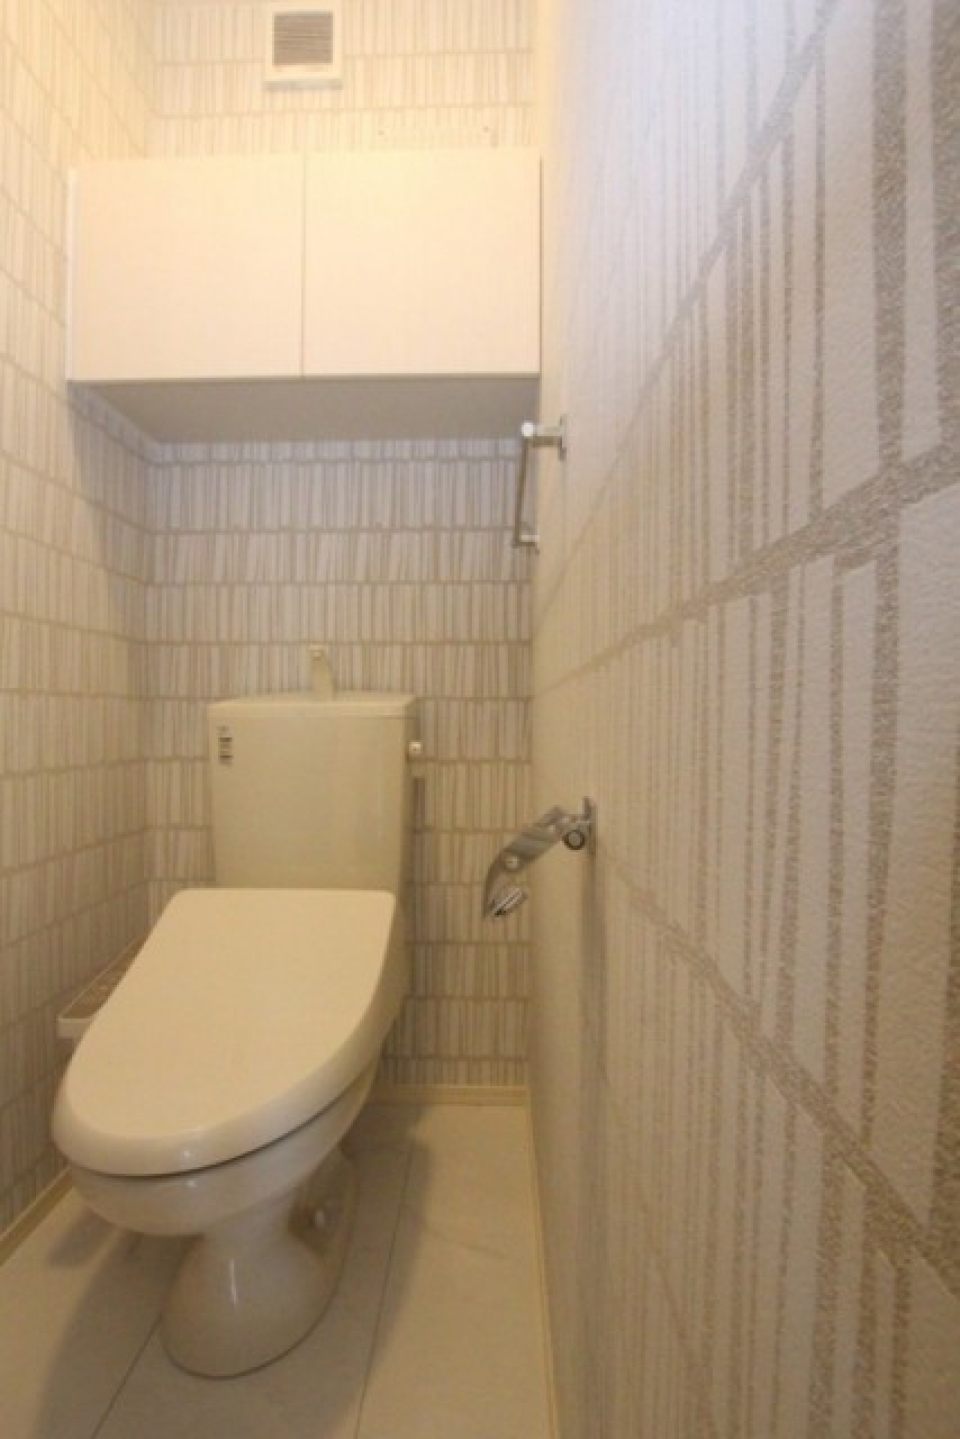 トイレの小さなスペースにこそ壁紙でインパクトを